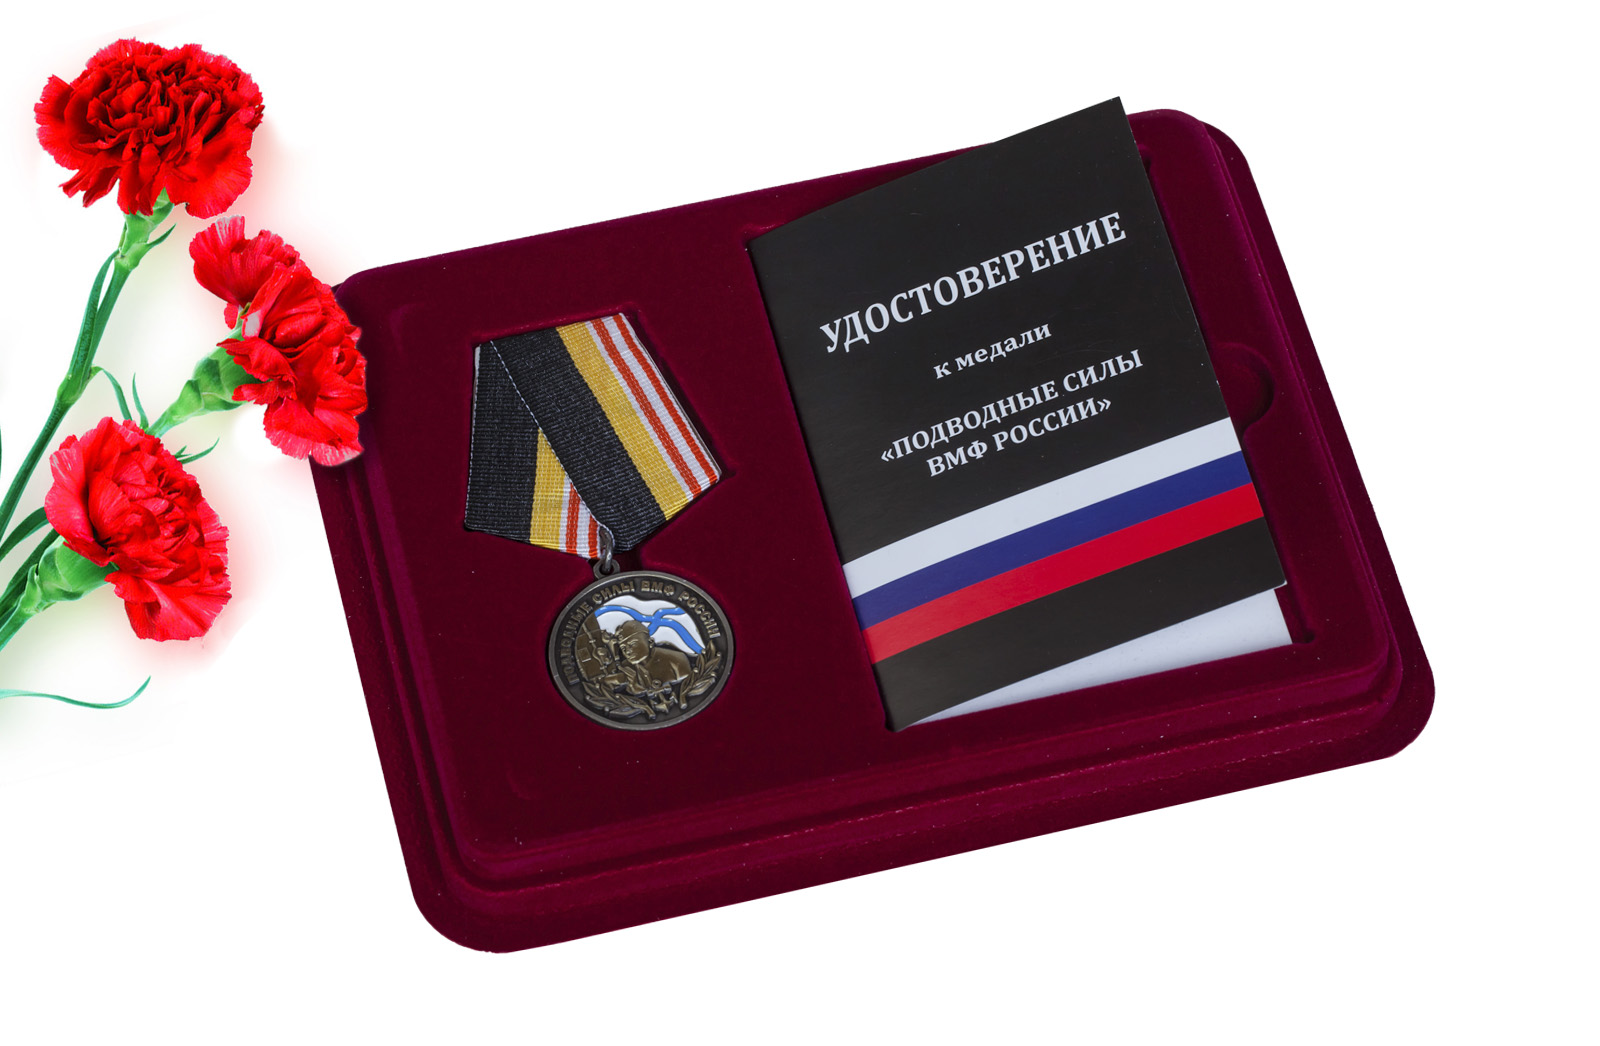 Купить медаль ВМФ России Подводные силы с доставкой по России и не только